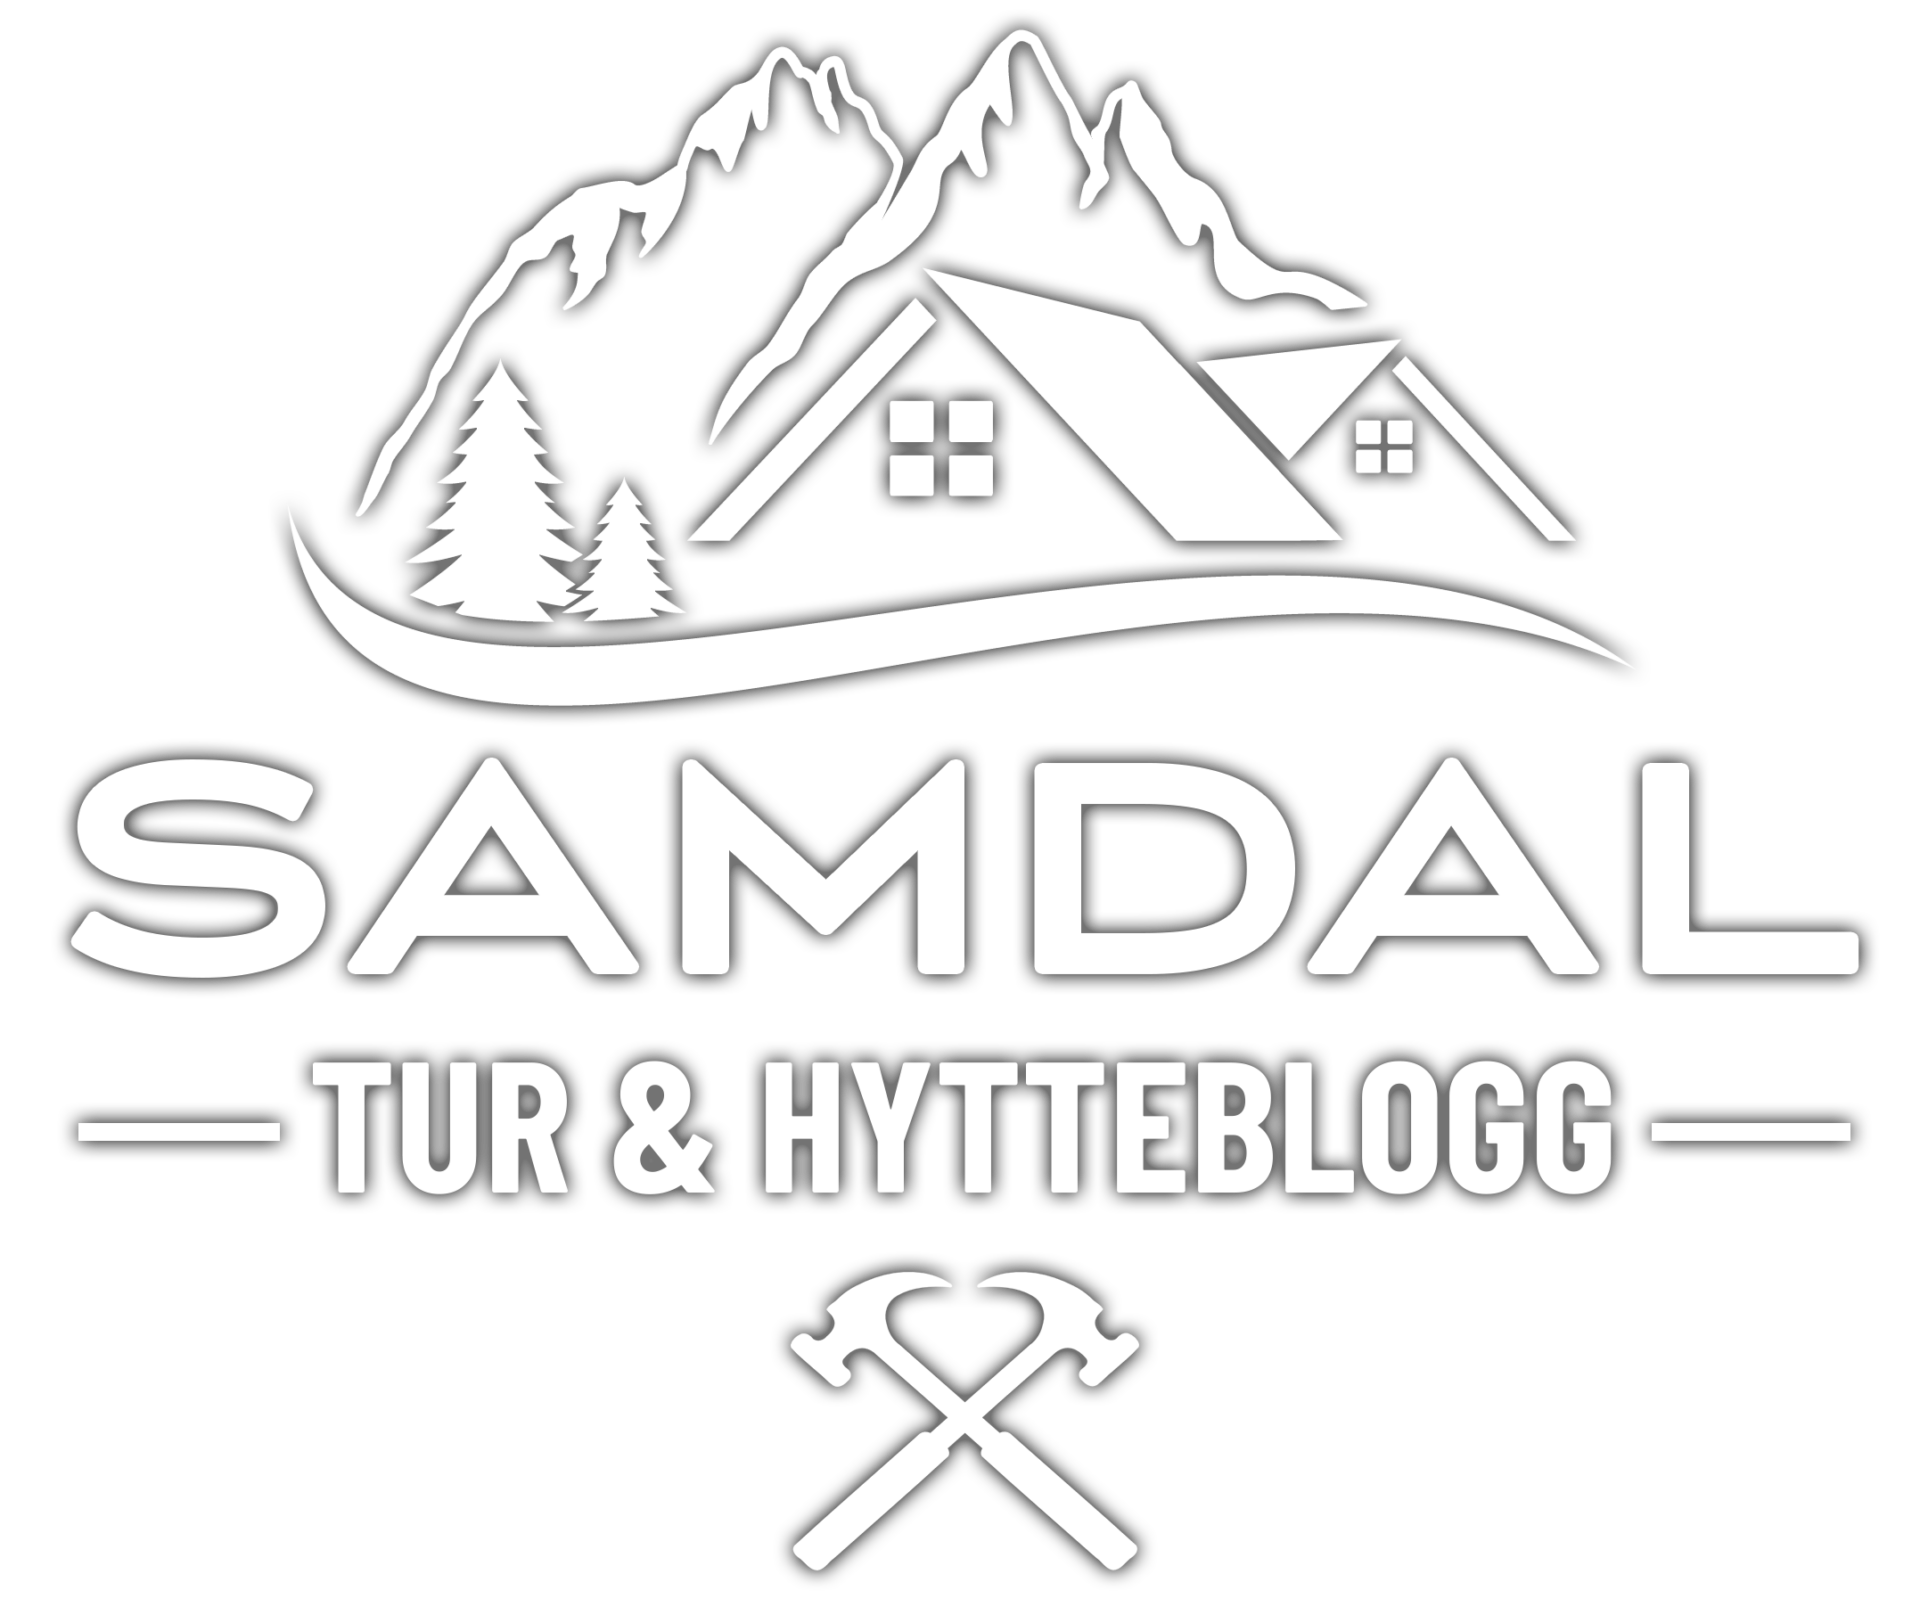 Roger Samdal – Tur & Hytteblogg